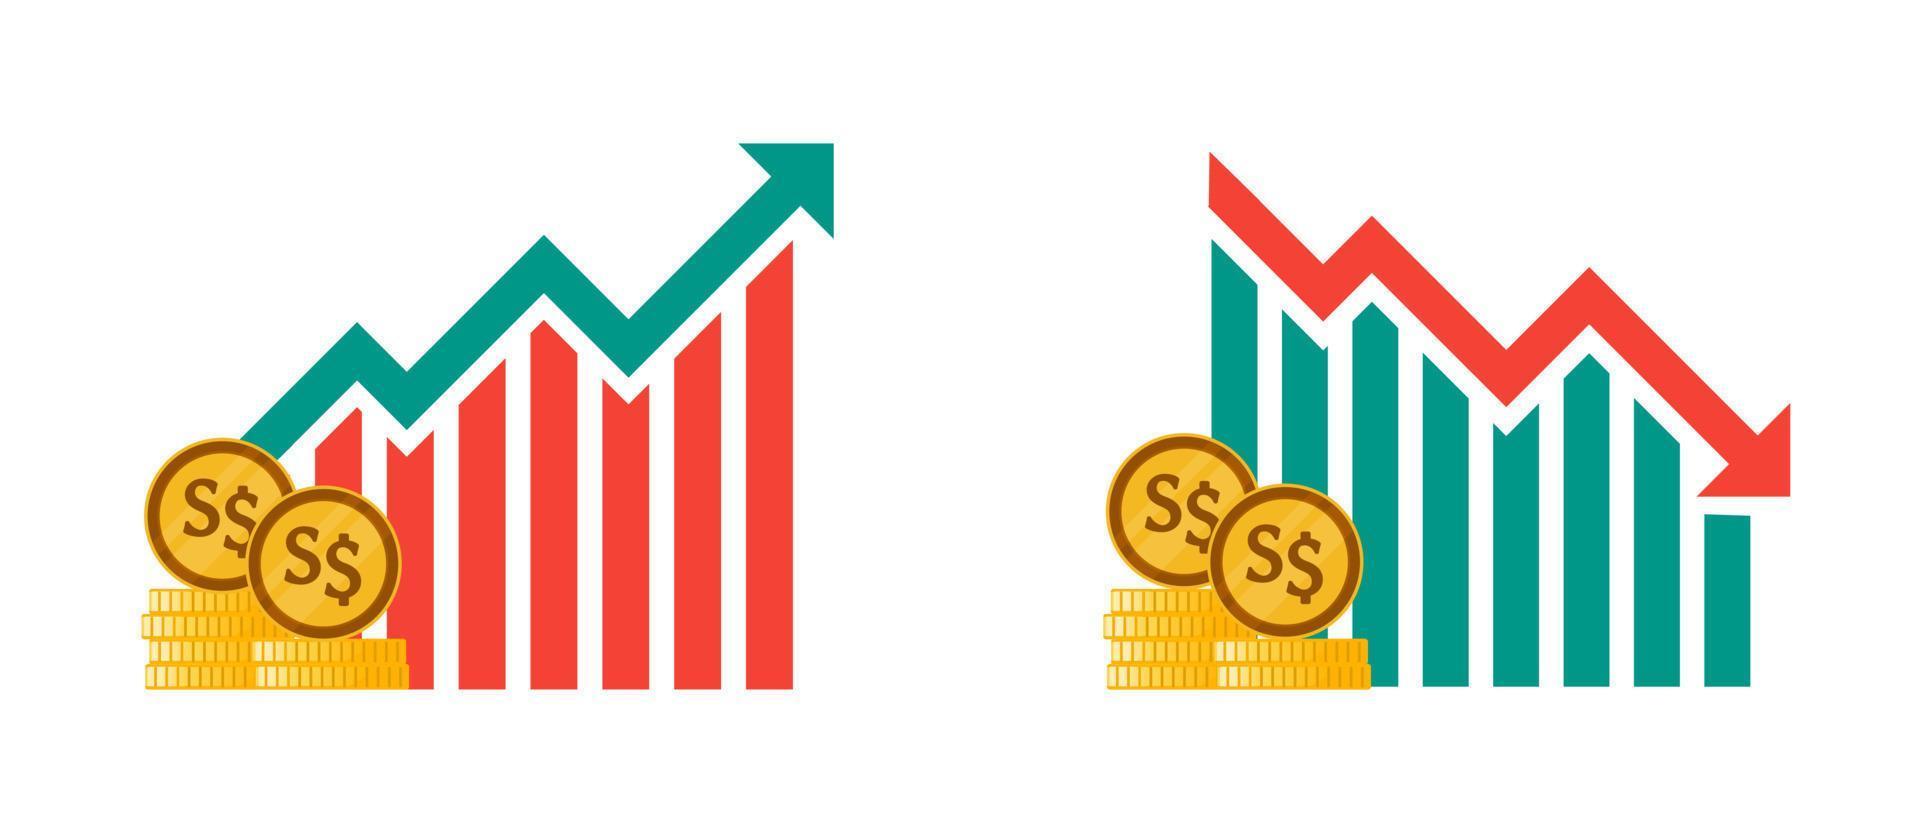 Singapore dollar valuta fluctuatie illustraties vector